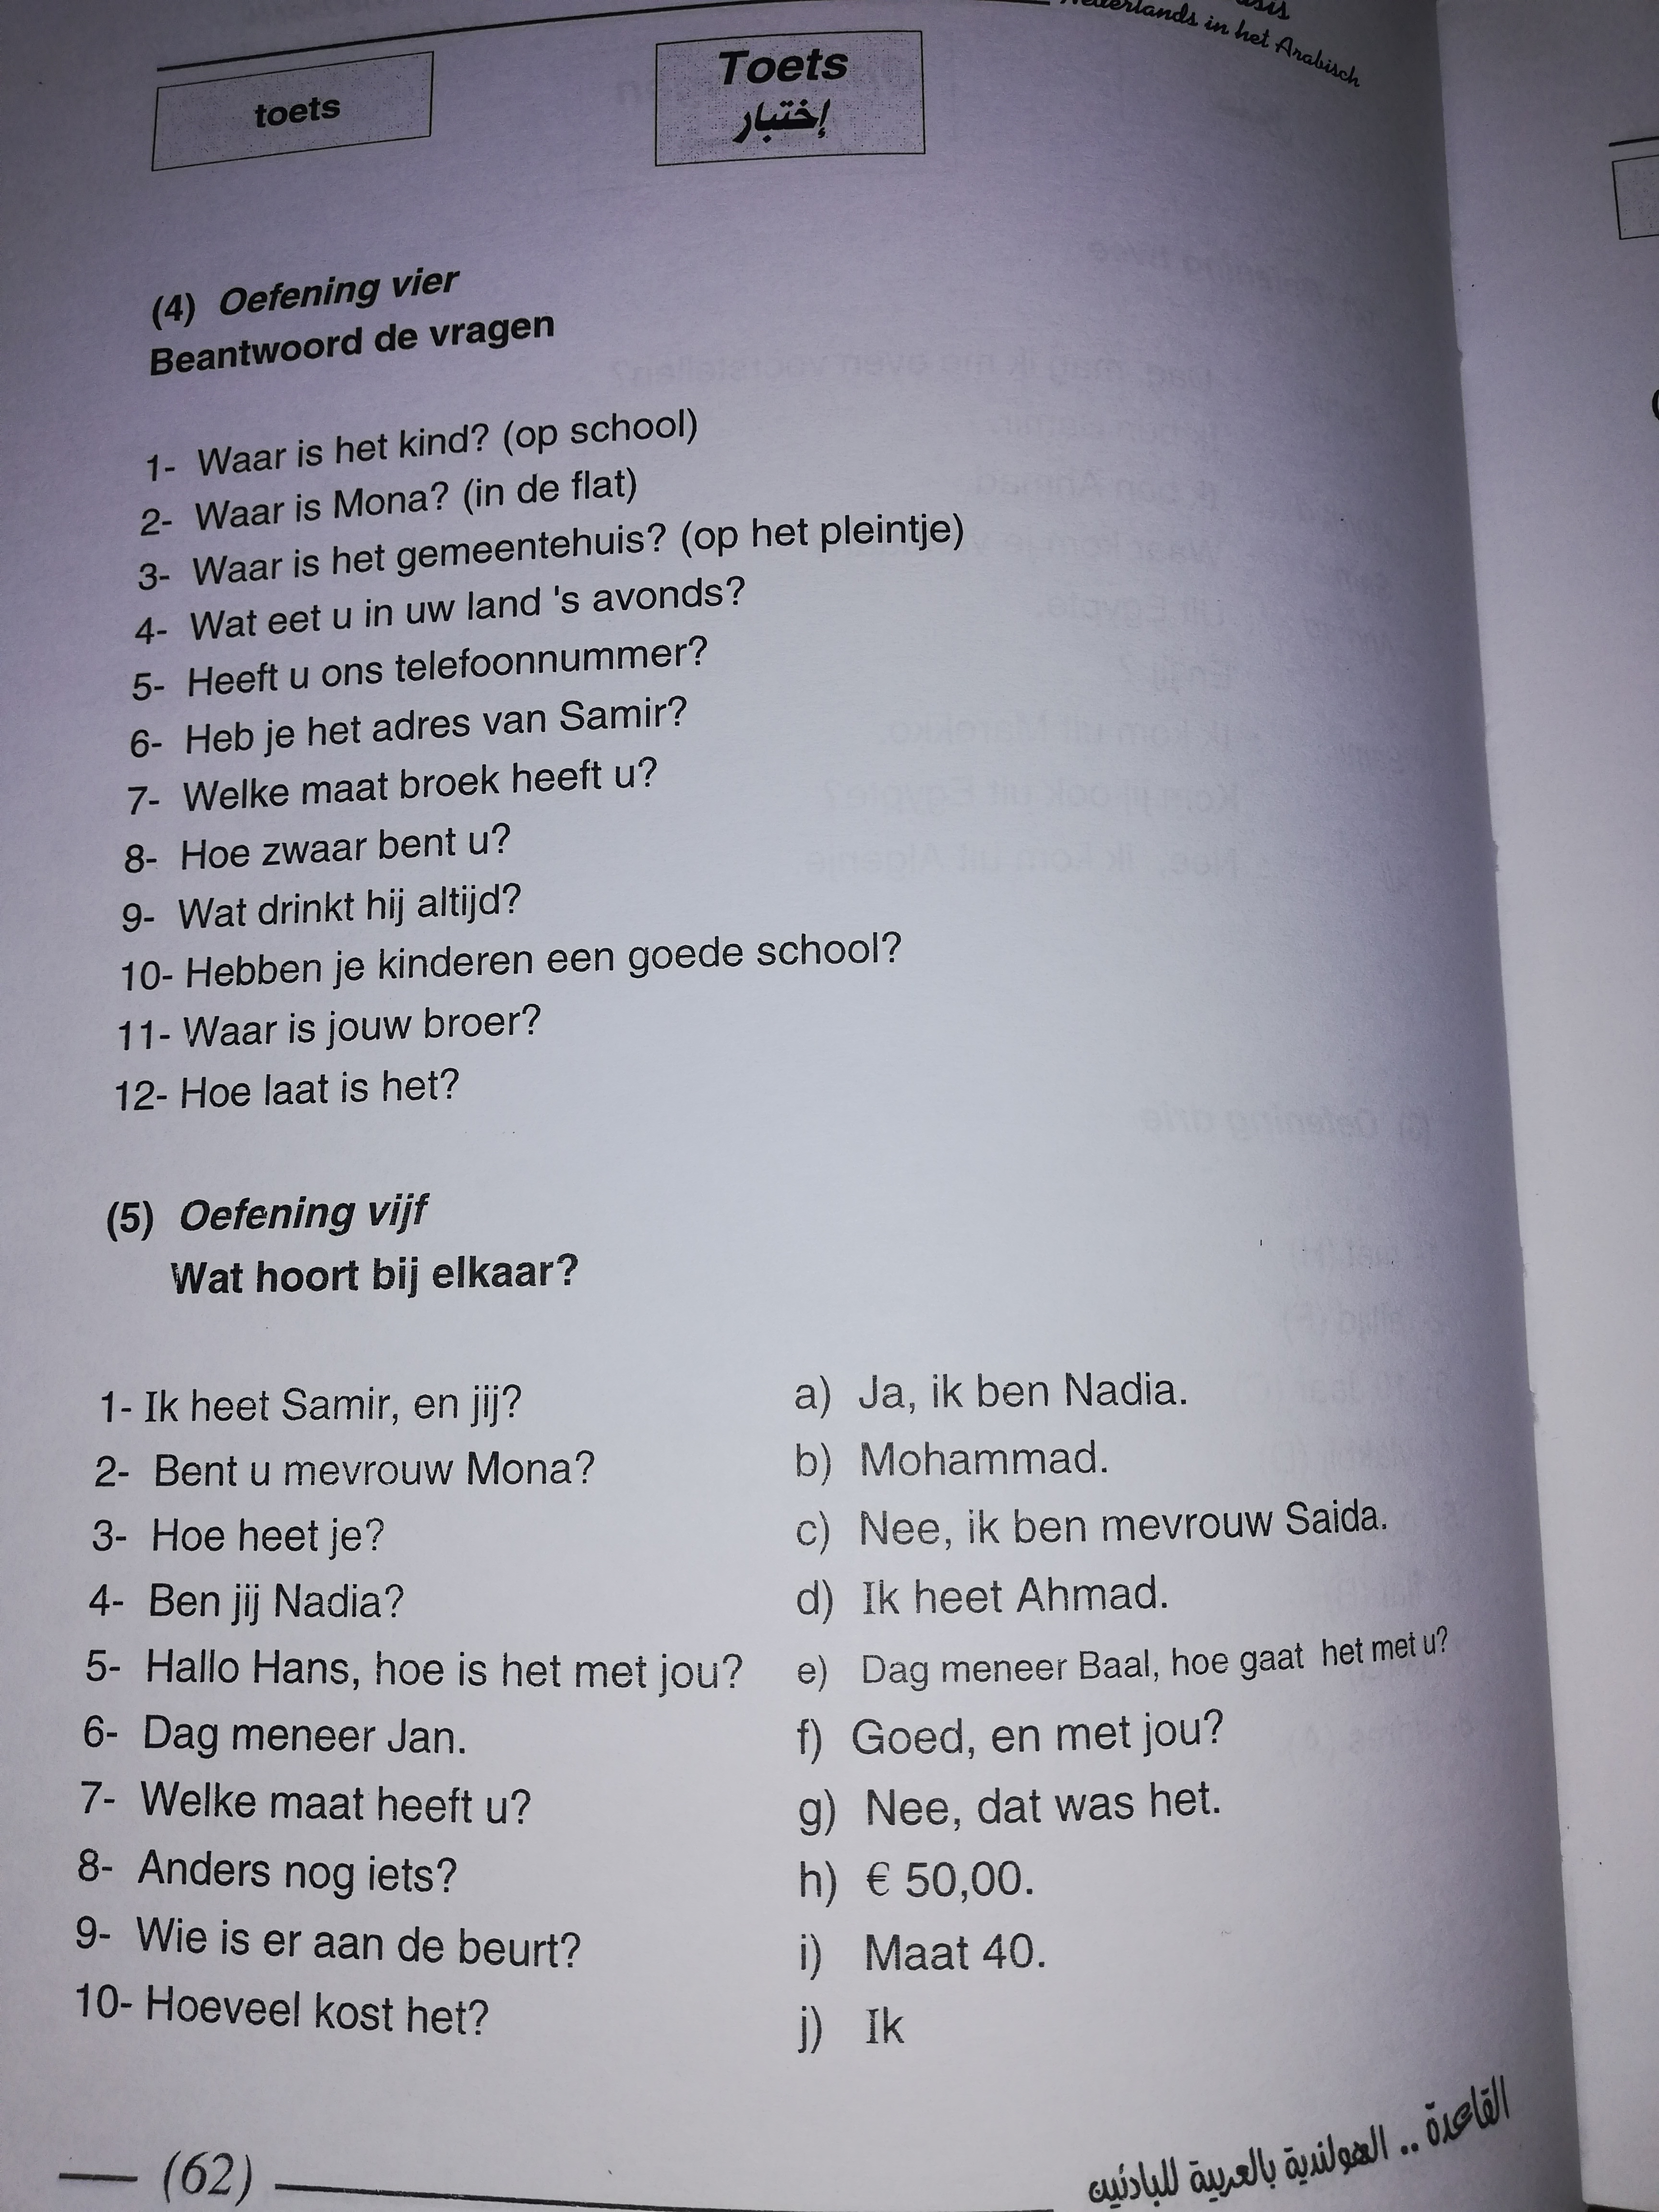 اختبر مستواك في  اللغة الهولندية عن طريق التمرين الموجود في الصفحة